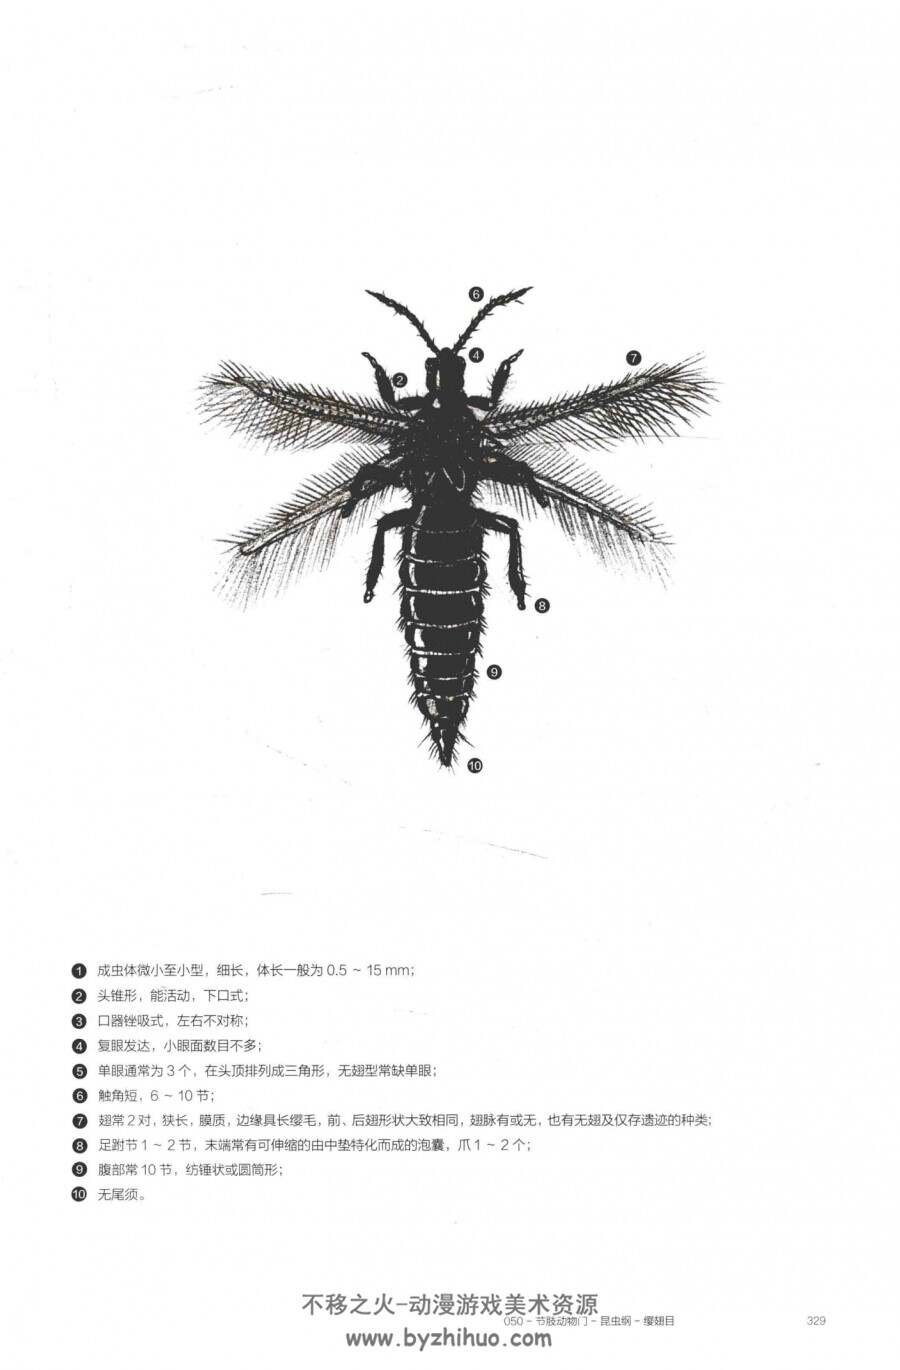 凝固的时空-琥珀中的昆虫及其他无脊椎动物 百度网盘下载赏析